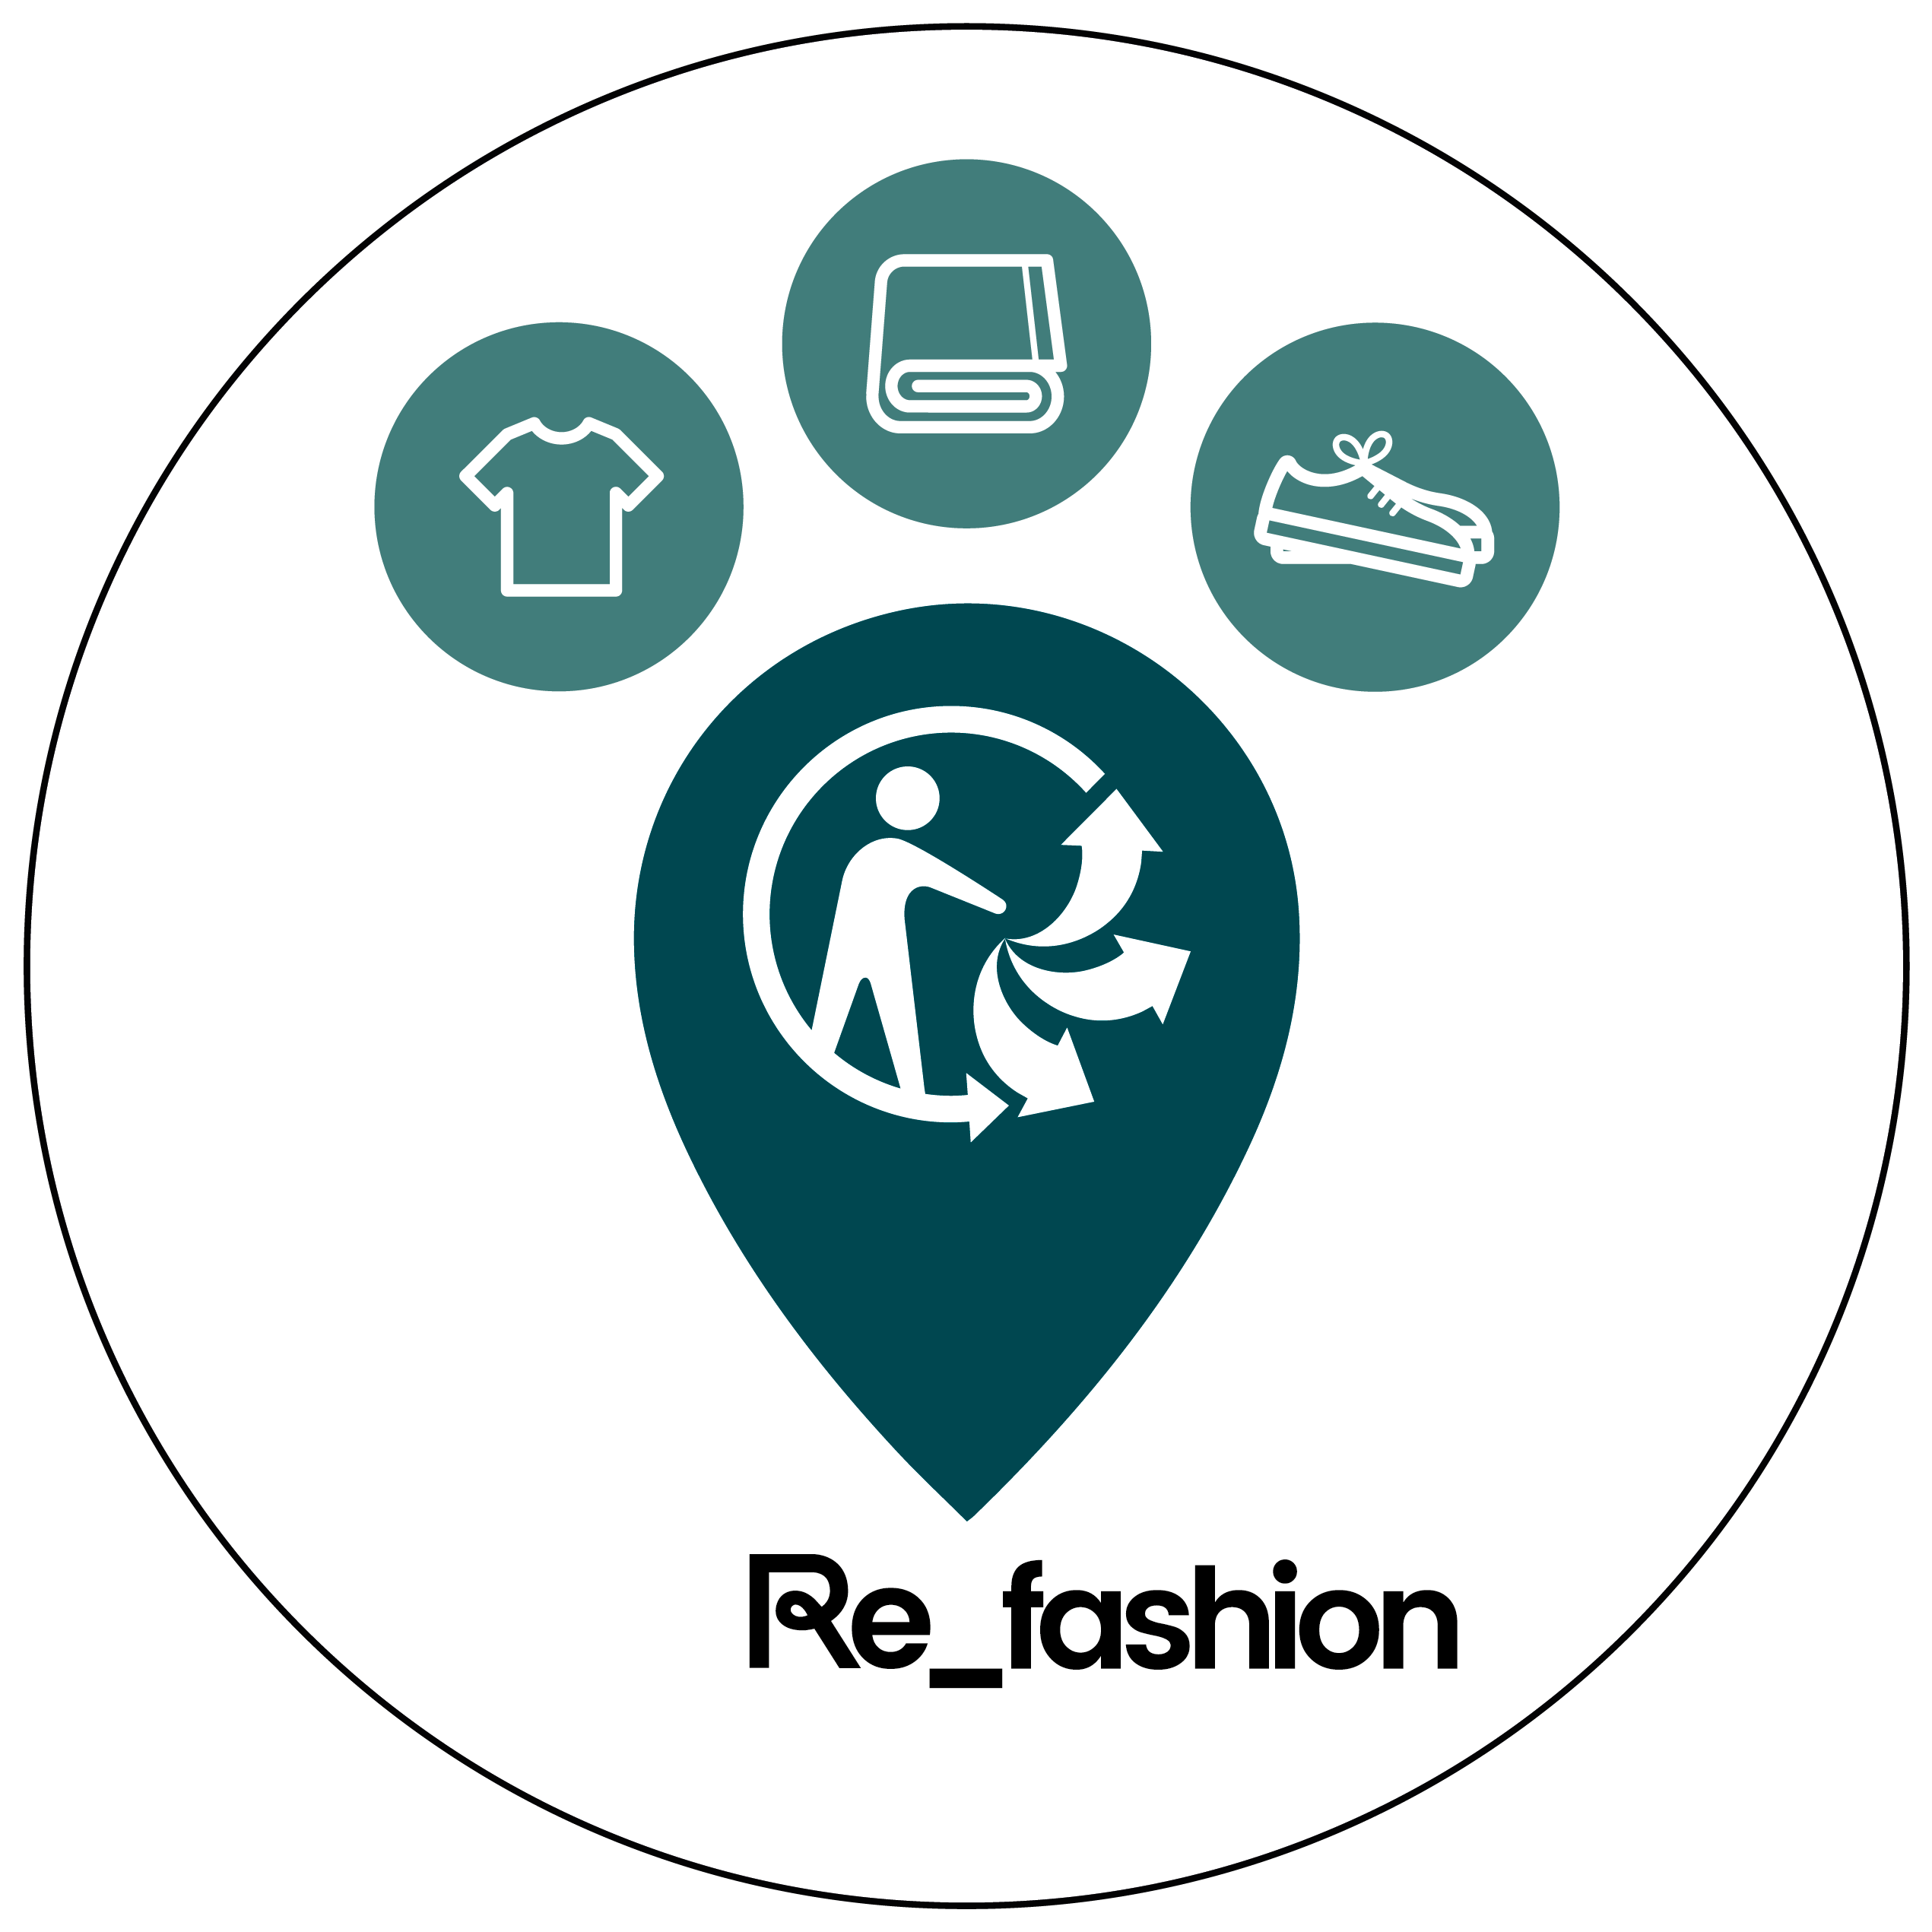 www.refashion.fr/citoyen